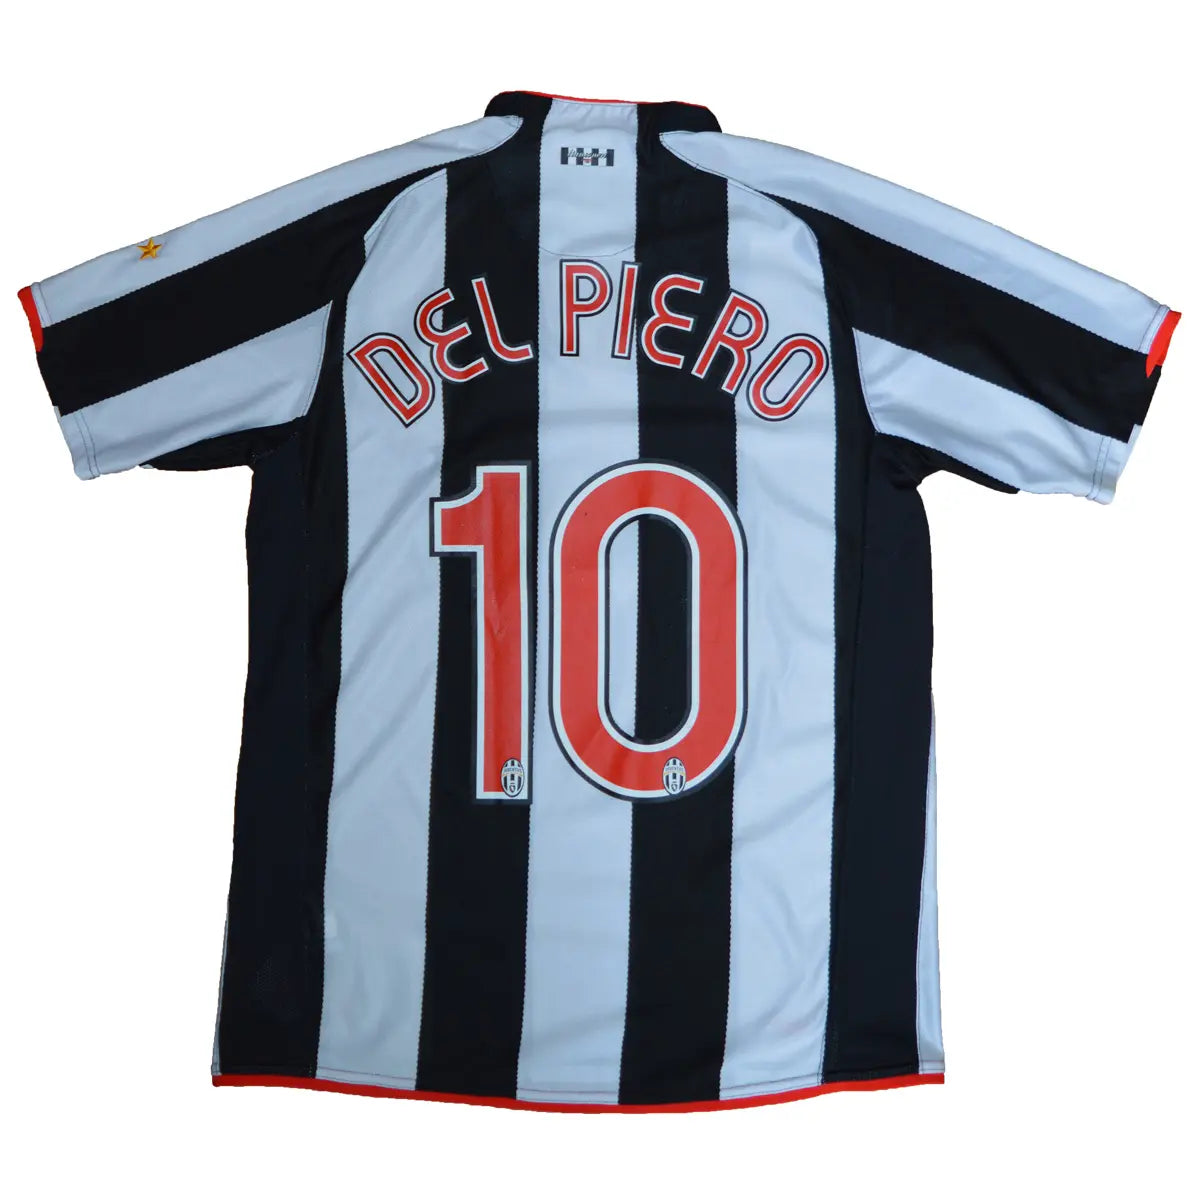 Maillot de foot rétro/vintage authentique blanc et noir nike Juventus domicile 2007-2008 Del Piero flocage